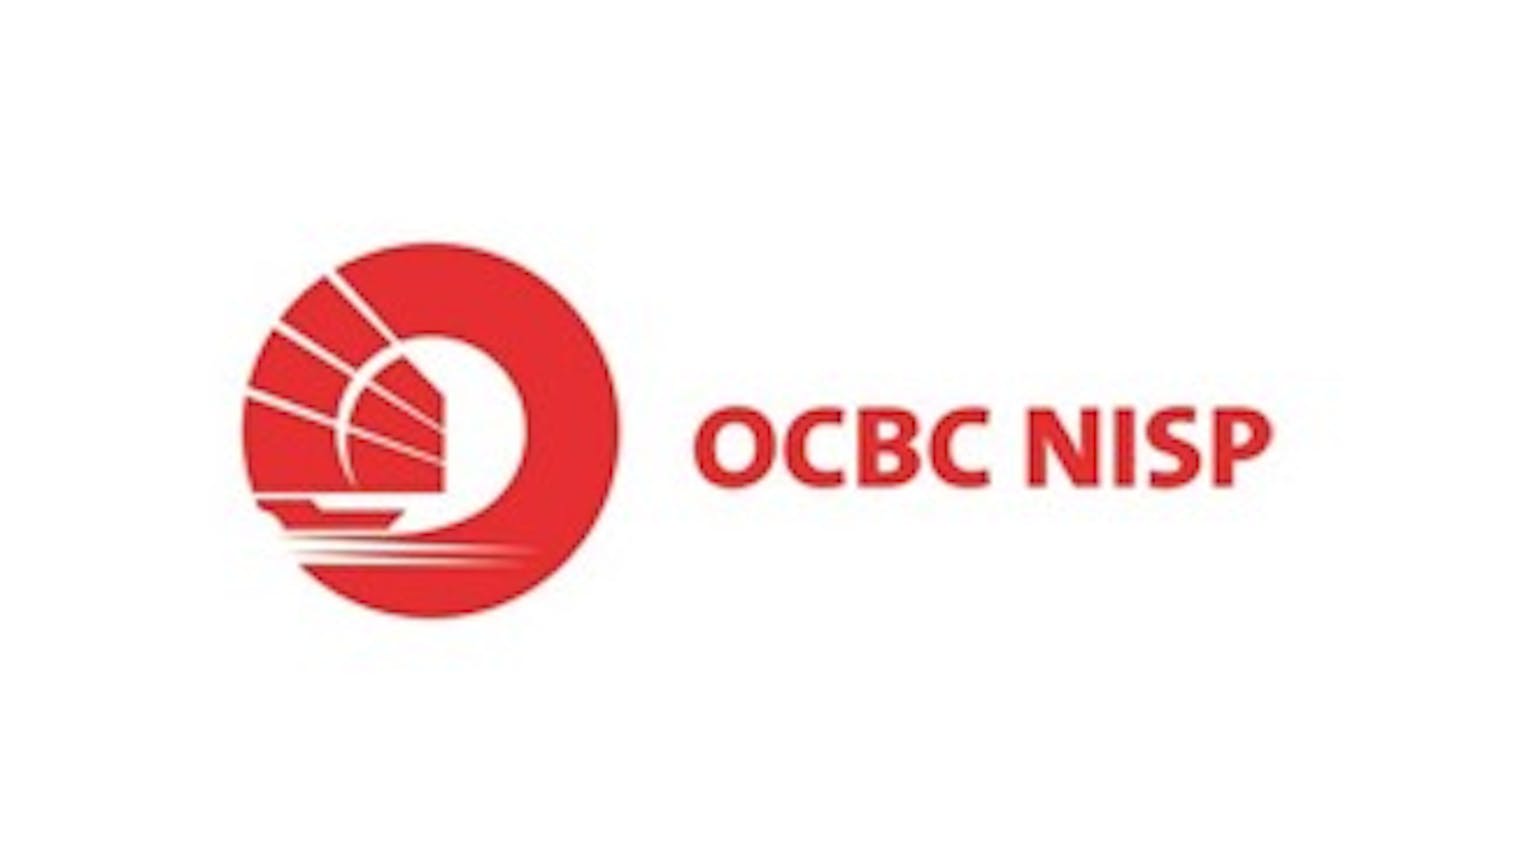 KMG OCBC NISP